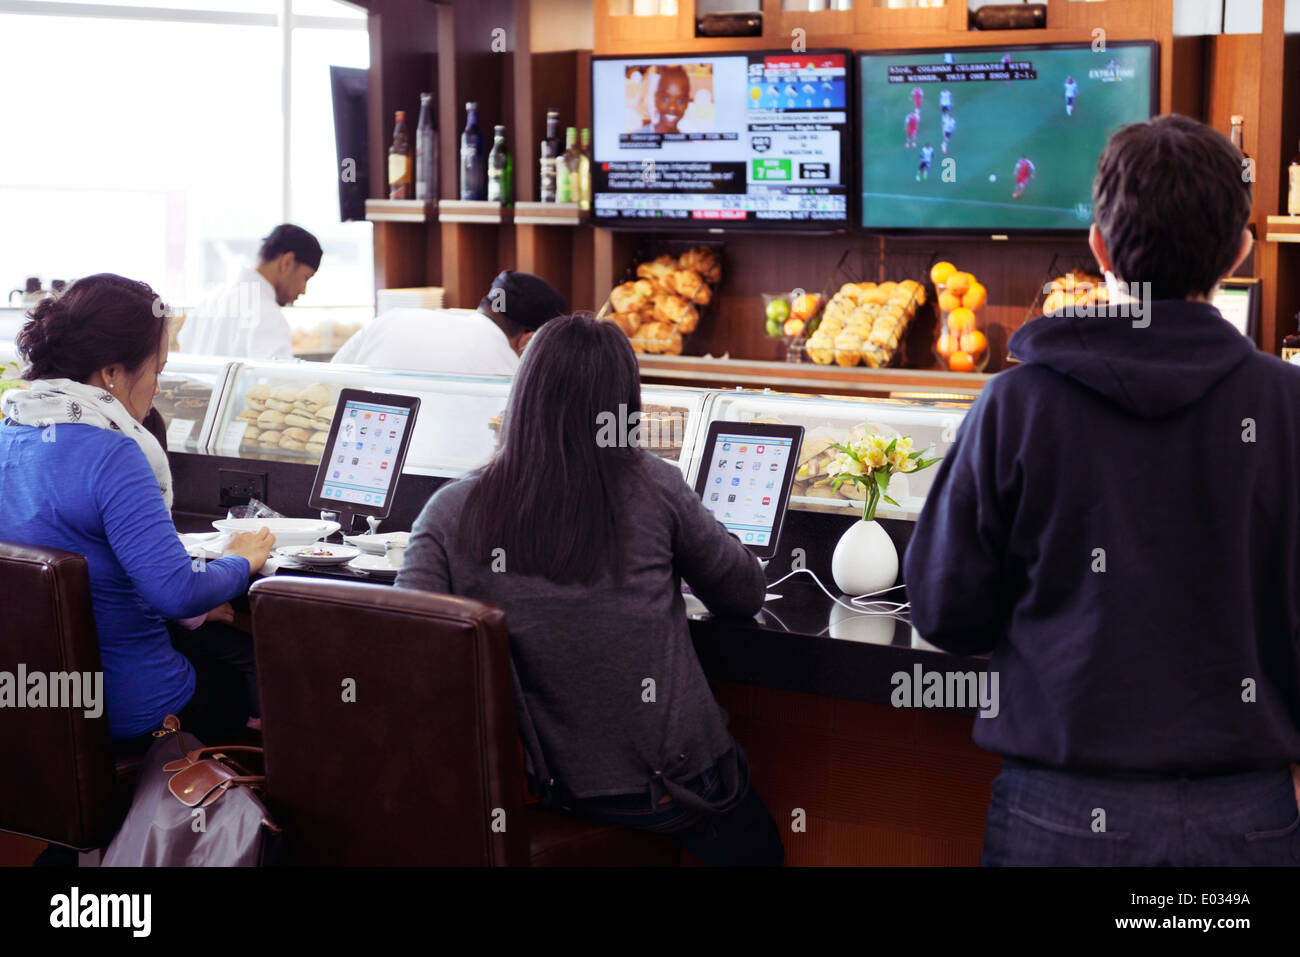 Menschen sitzen an einem Café-Schalter mit iPads vor ihnen. Toronto Pearson International Airport. Stockfoto